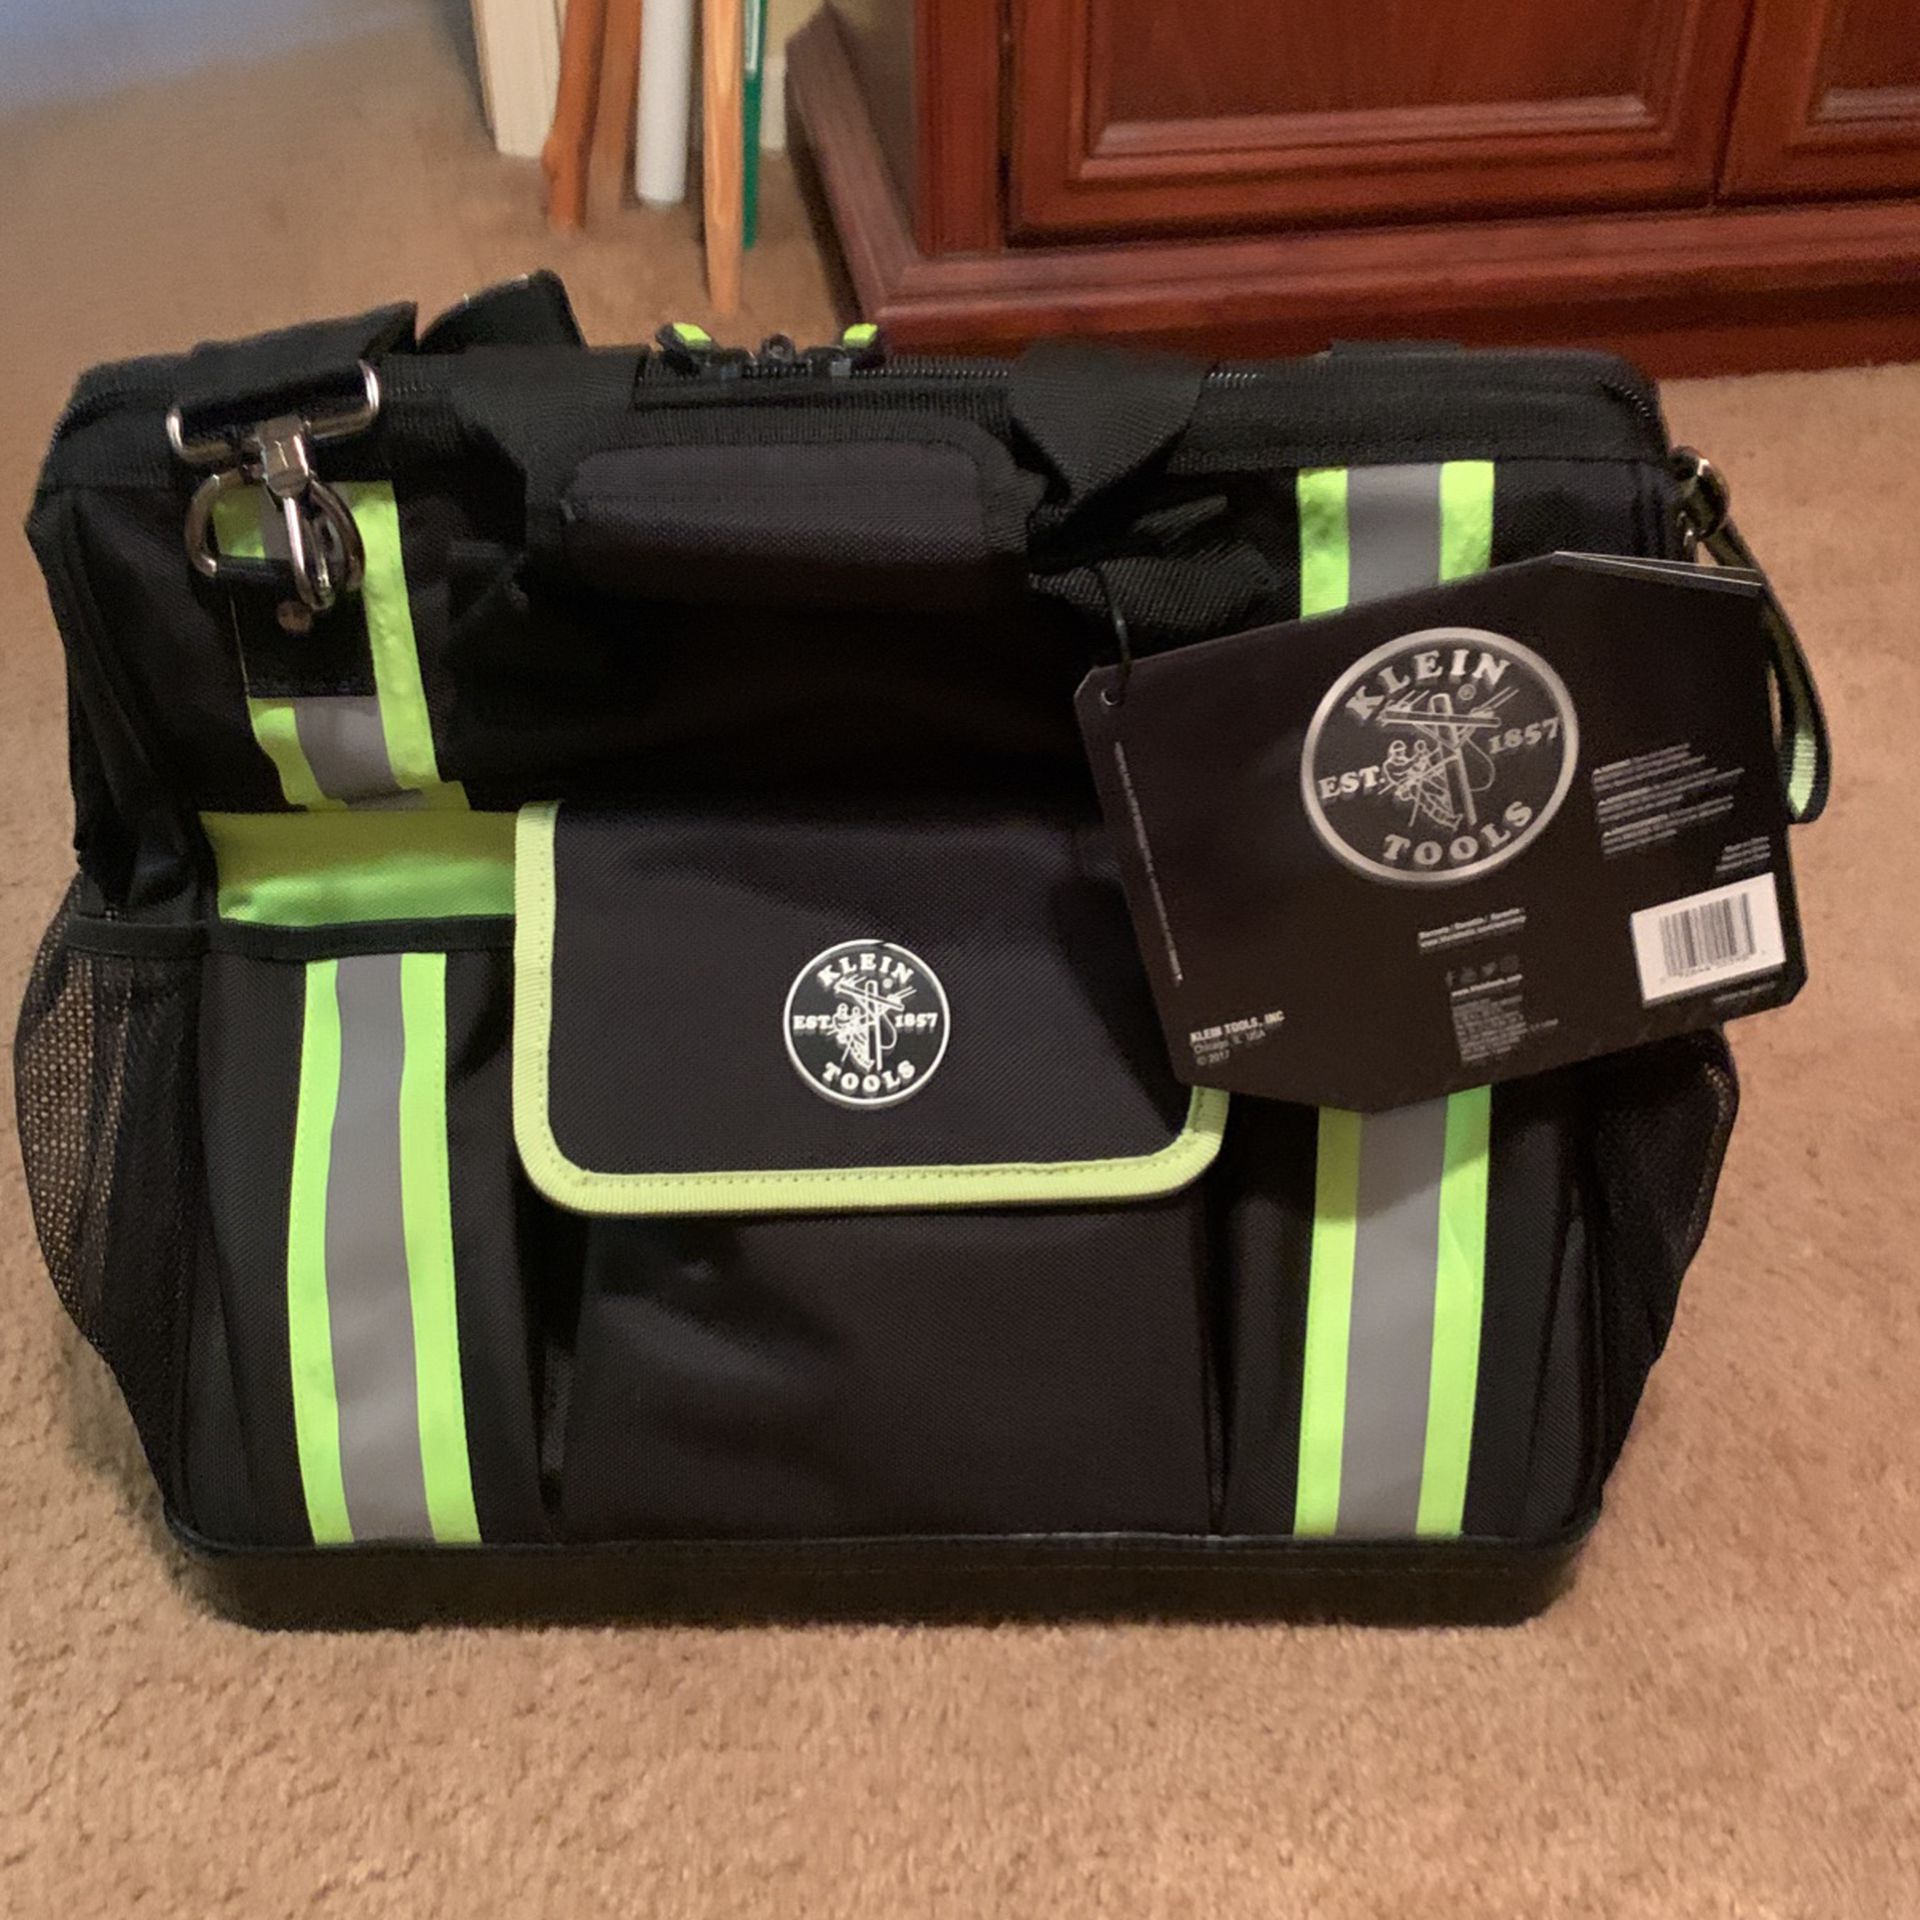 New Klein Tool Bag